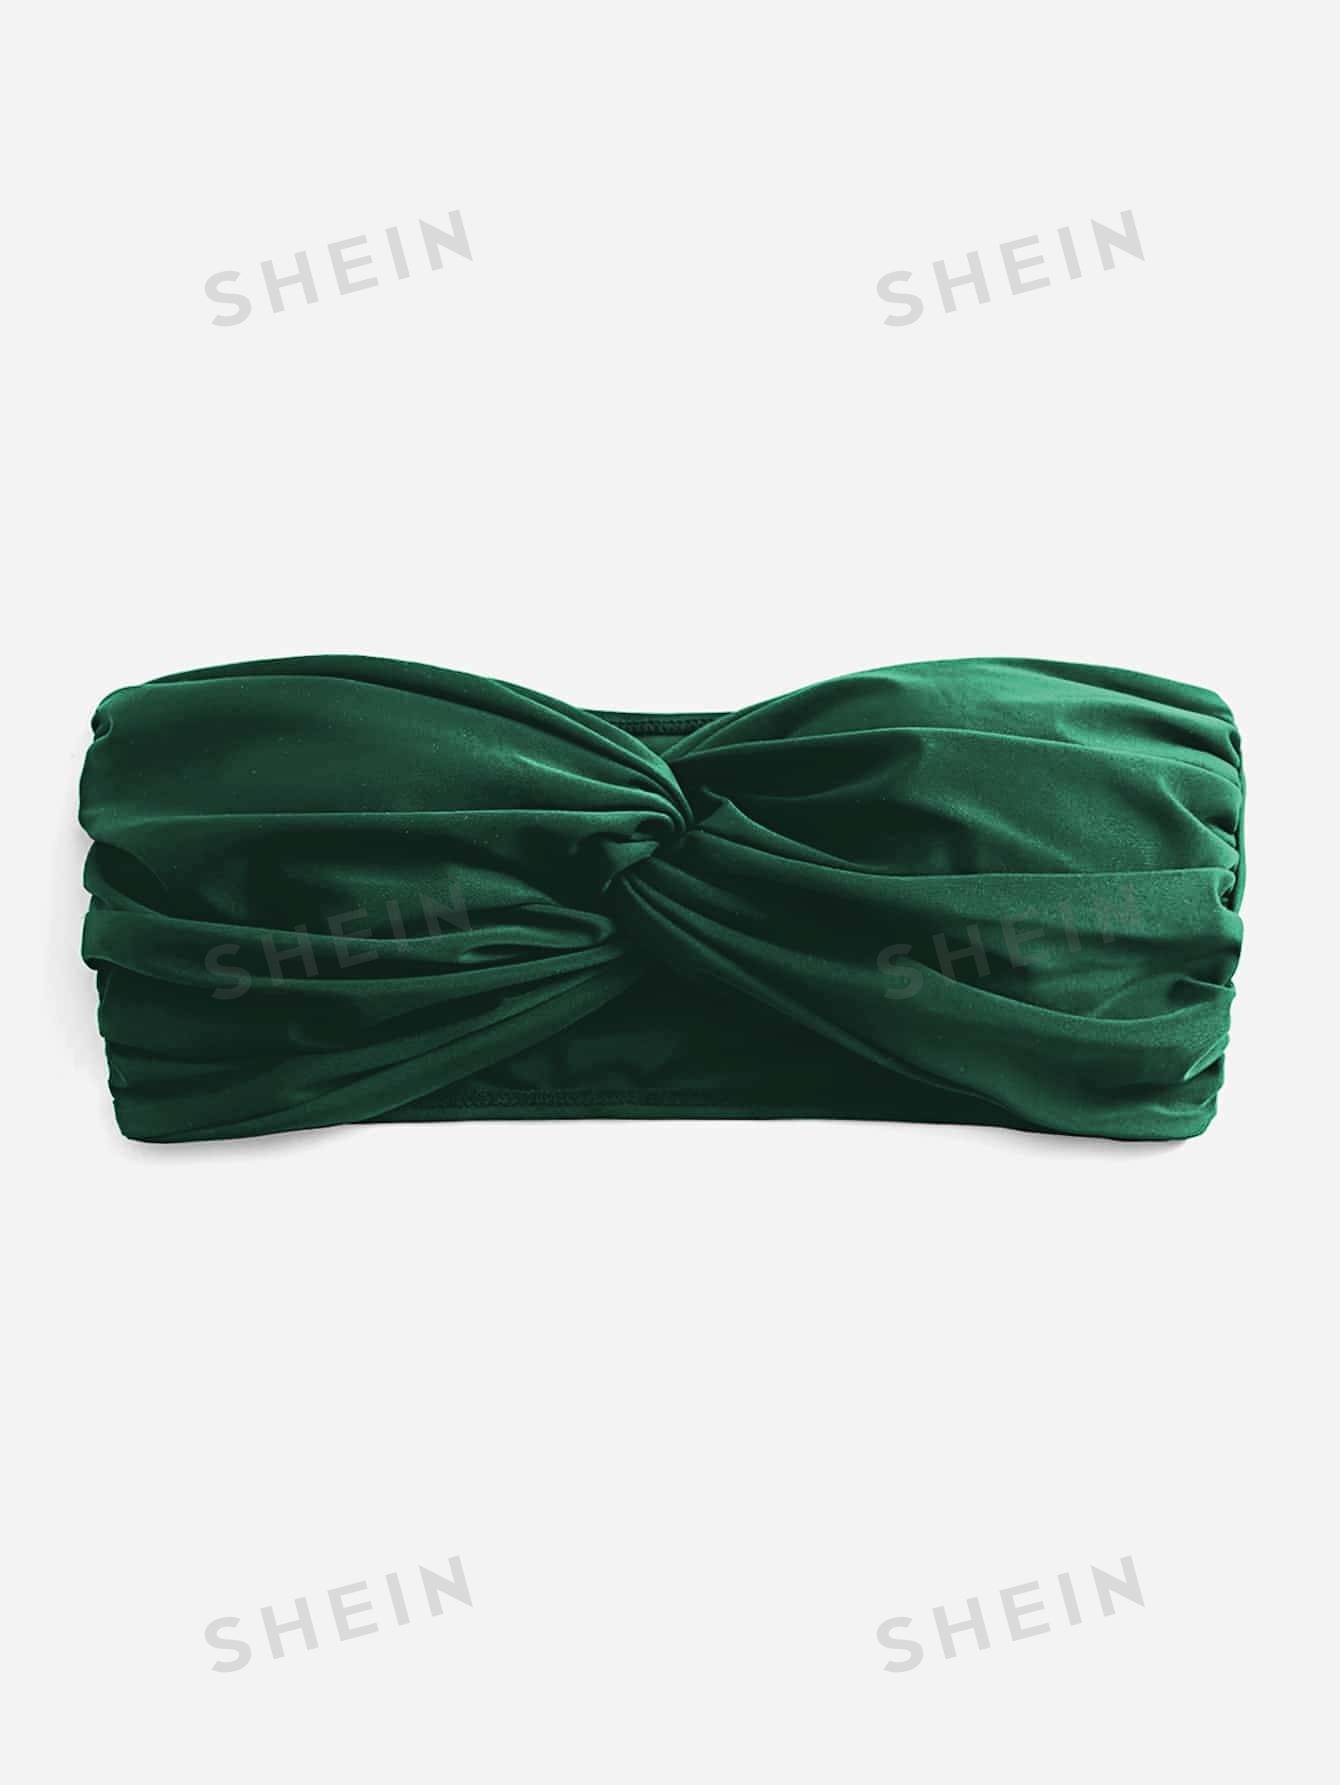 shein swim basics сиреневый фиолетовый Женский однотонный бикини-топ бандо с закрученной передней частью, темно-зеленый